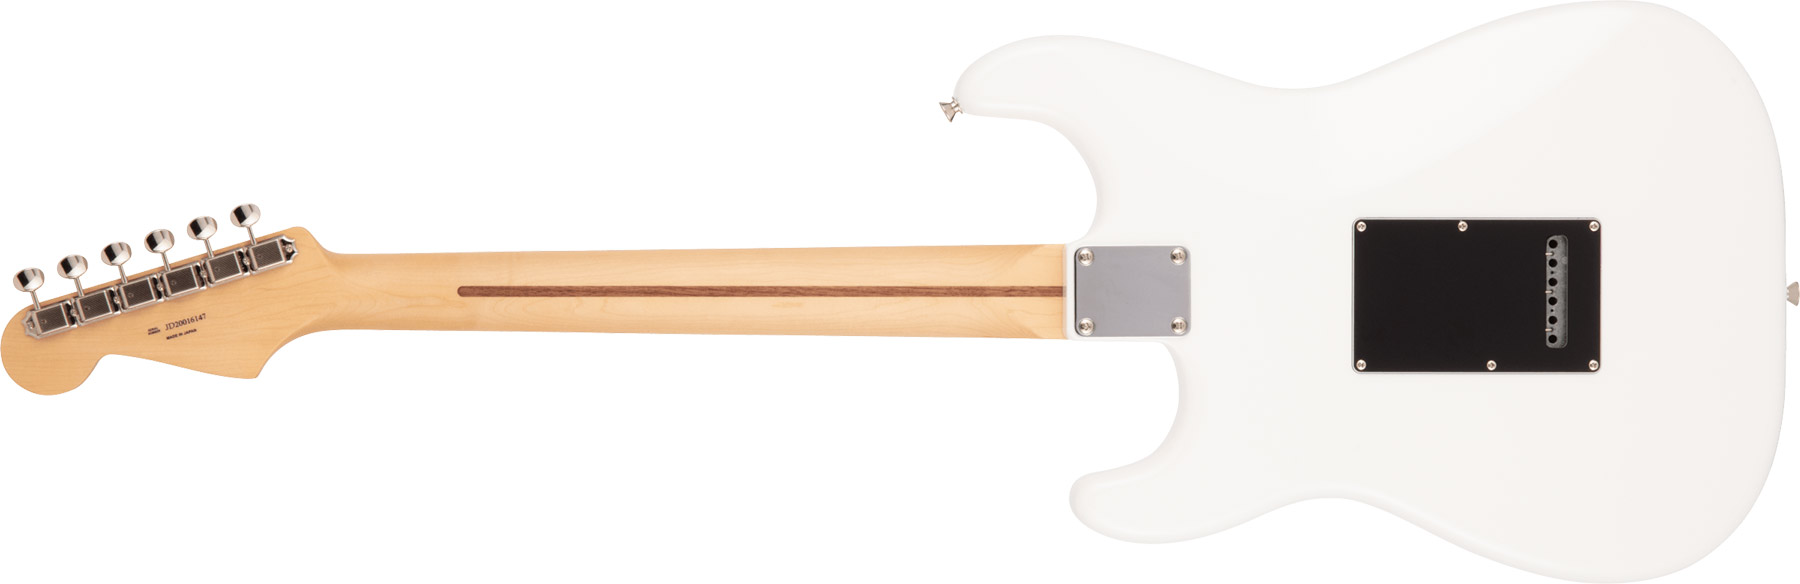 Fender Strat Hybrid Ii Mij Jap 3s Trem Mn - Arctic White - Guitare Électrique Forme Str - Variation 1